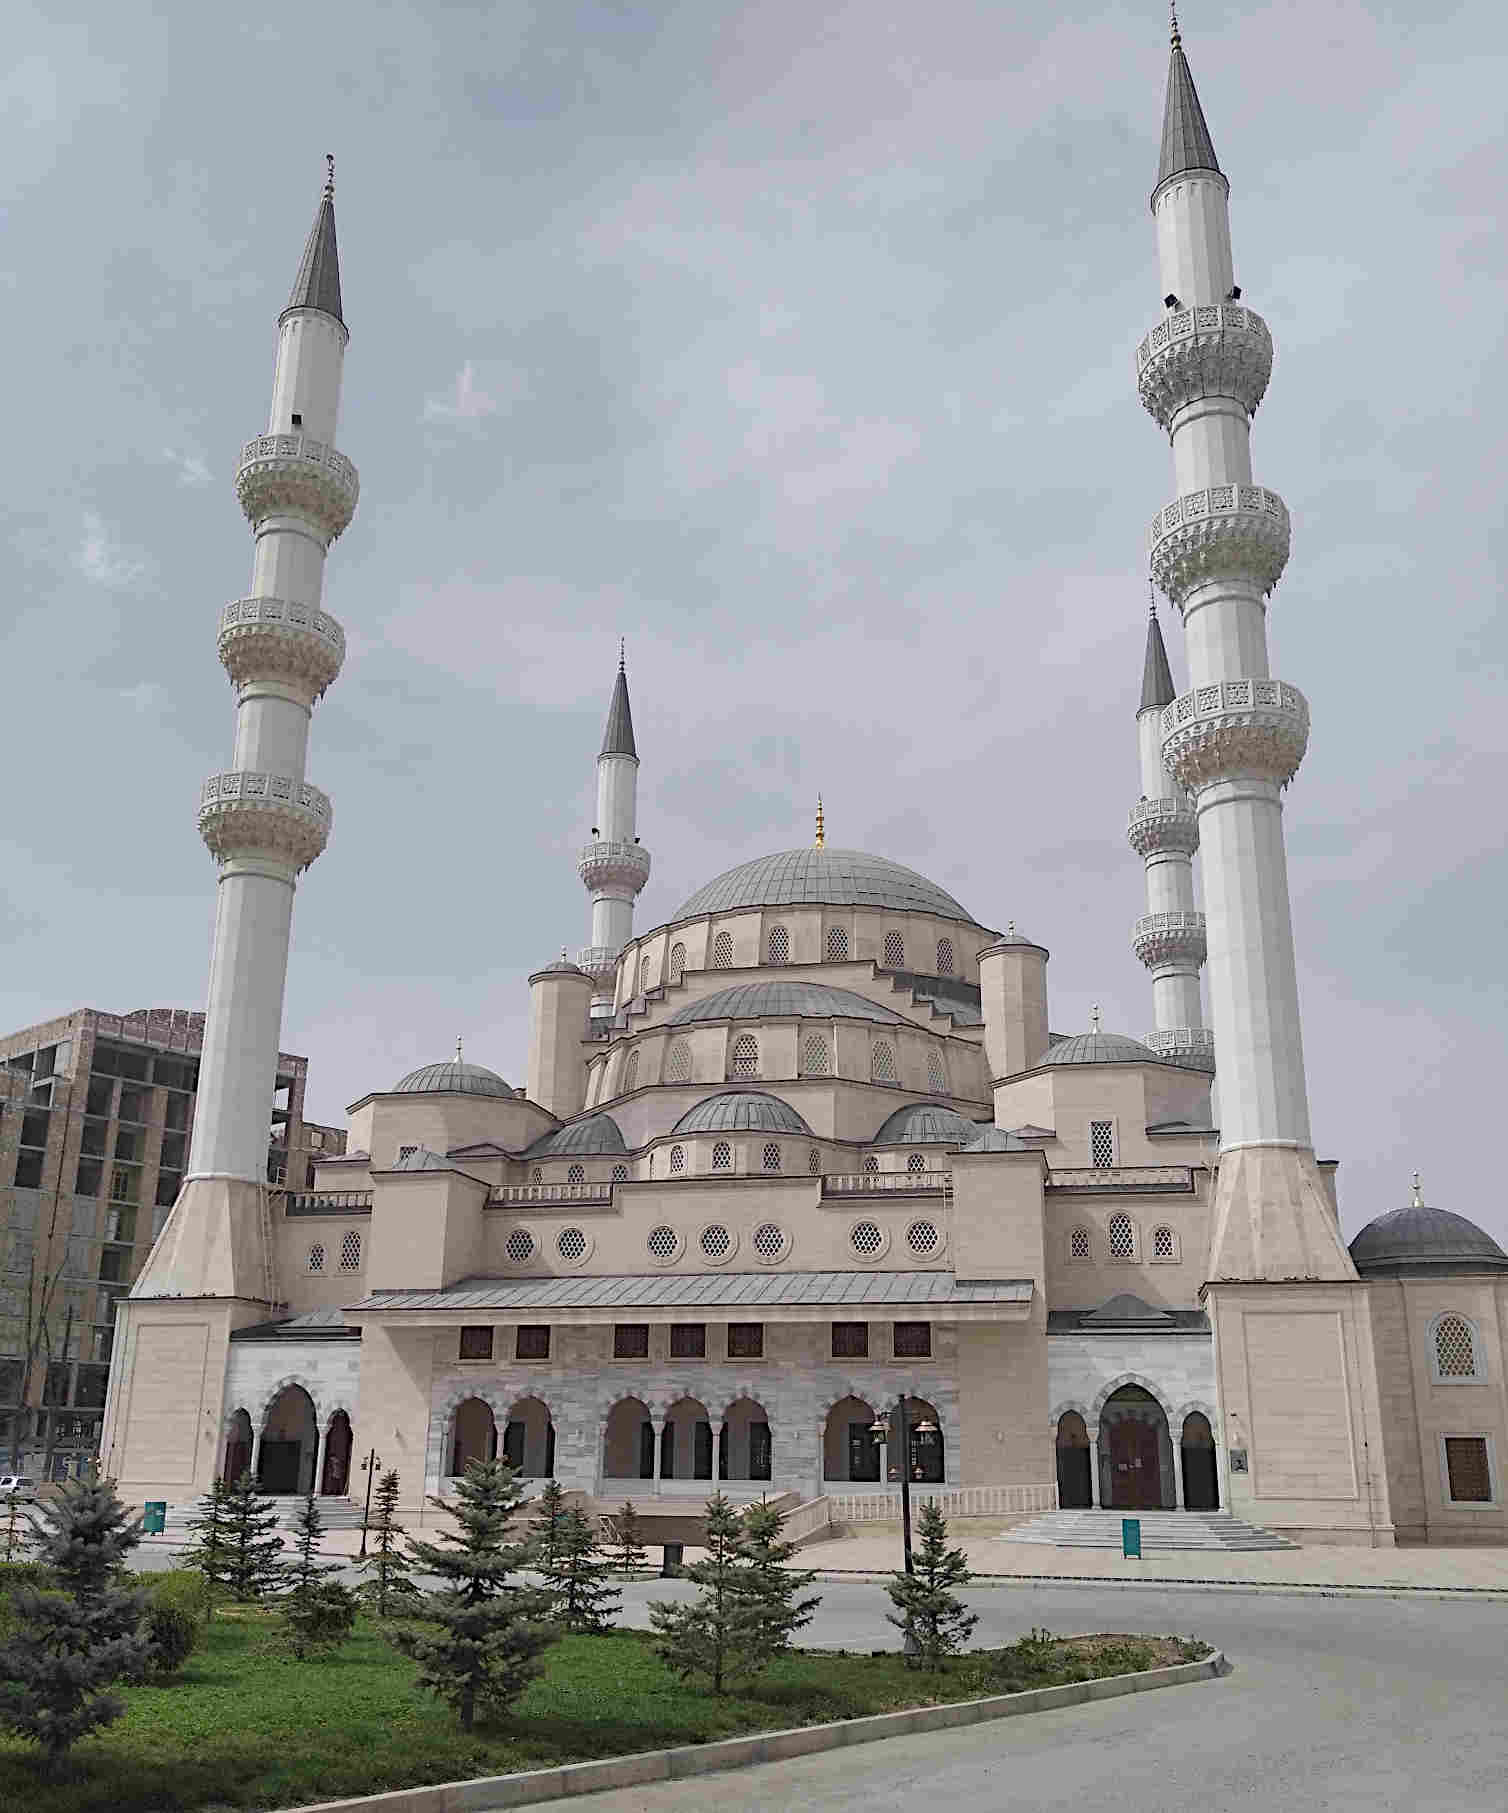 Мечеть, подаренная Турцией Бишкеку. Открыта в 2018. Одно из самых красивых зданий в городе.